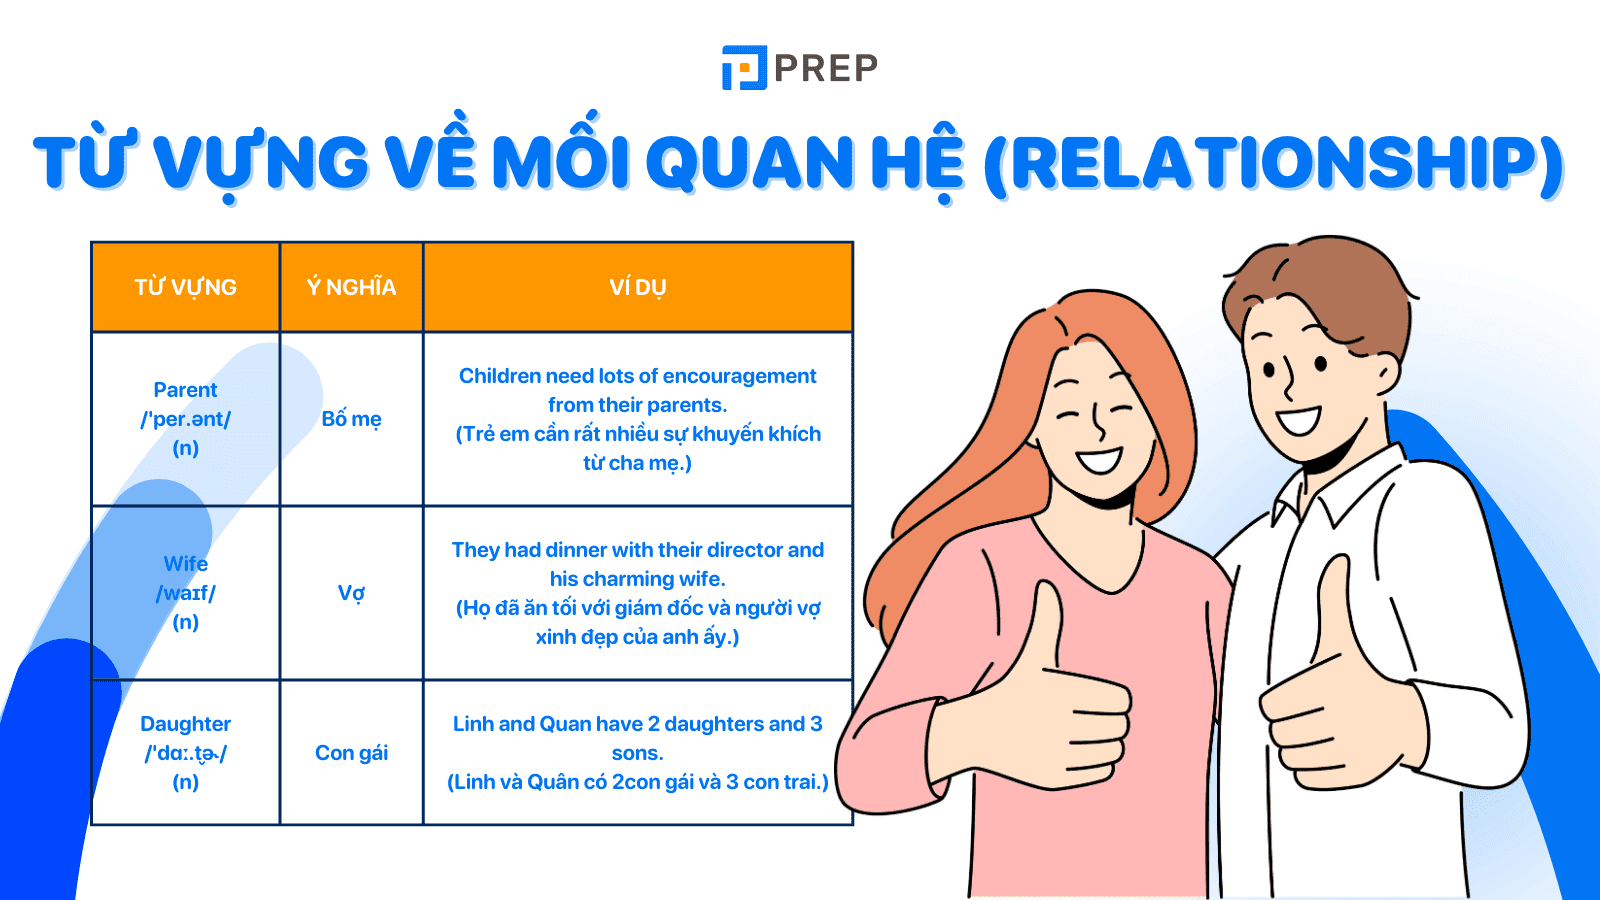 Từ vựng về Relationship (mối quan hệ) thông dụng trong tiếng Anh